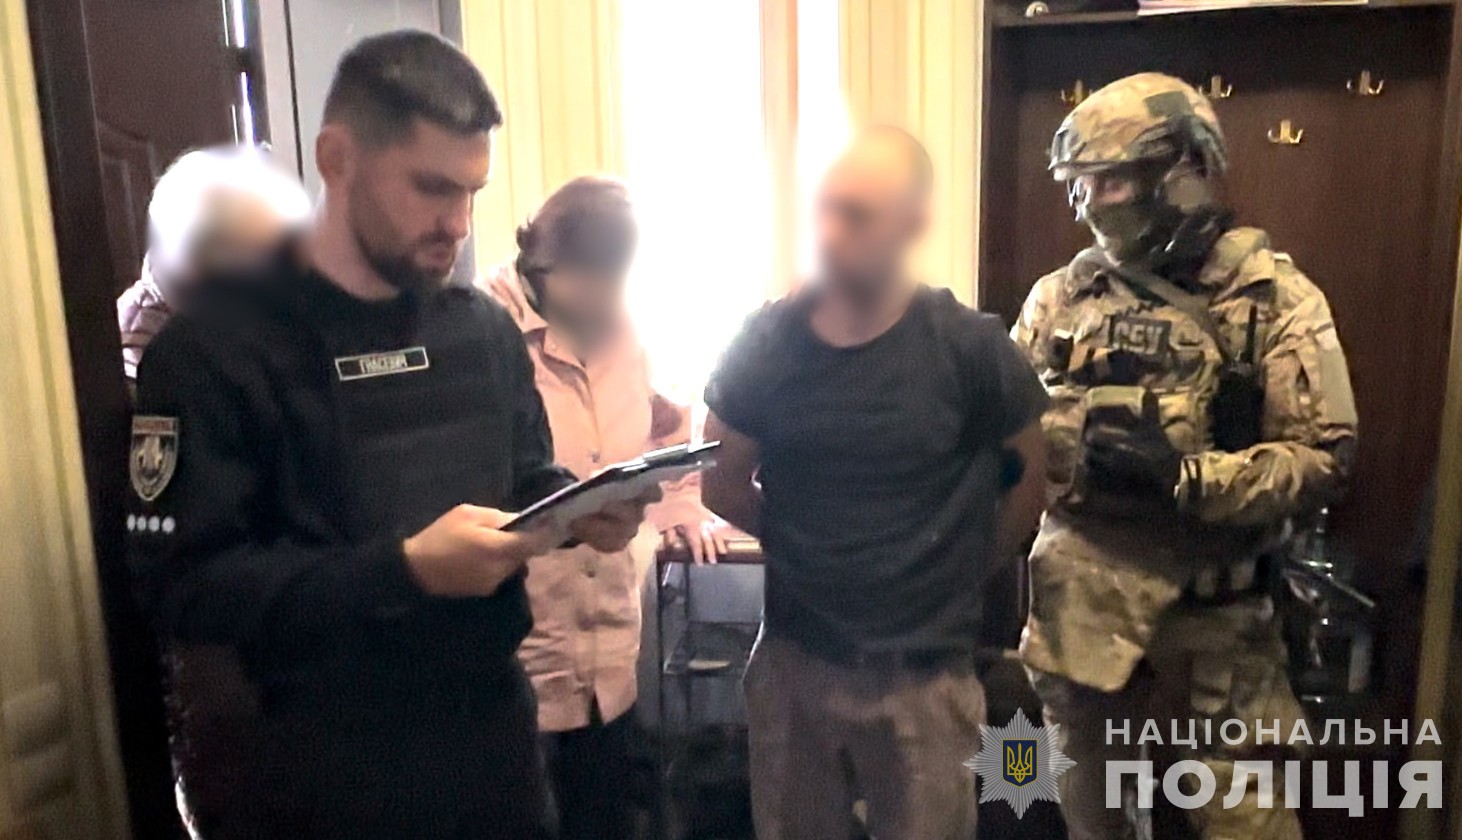 Просували прокремлівські ідеї в Україні: поліцейські ліквідували діяльність псевдорелігійної секти (ФОТО, ВІДЕО)